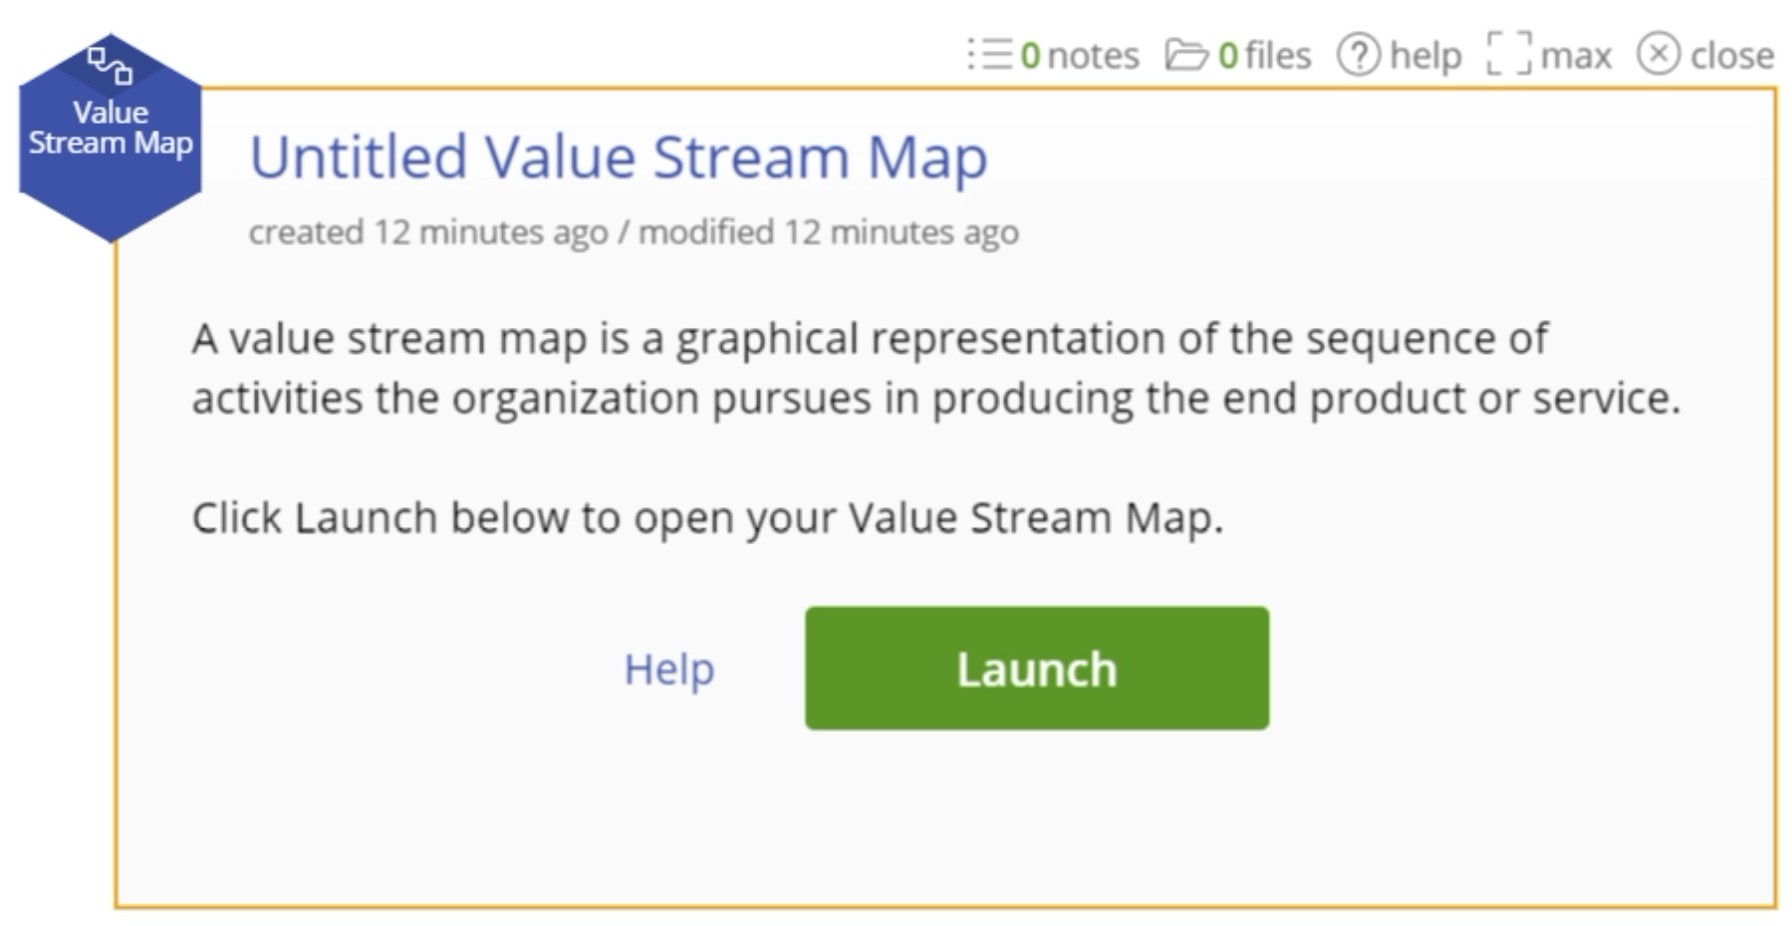 Value stream map launch menu.